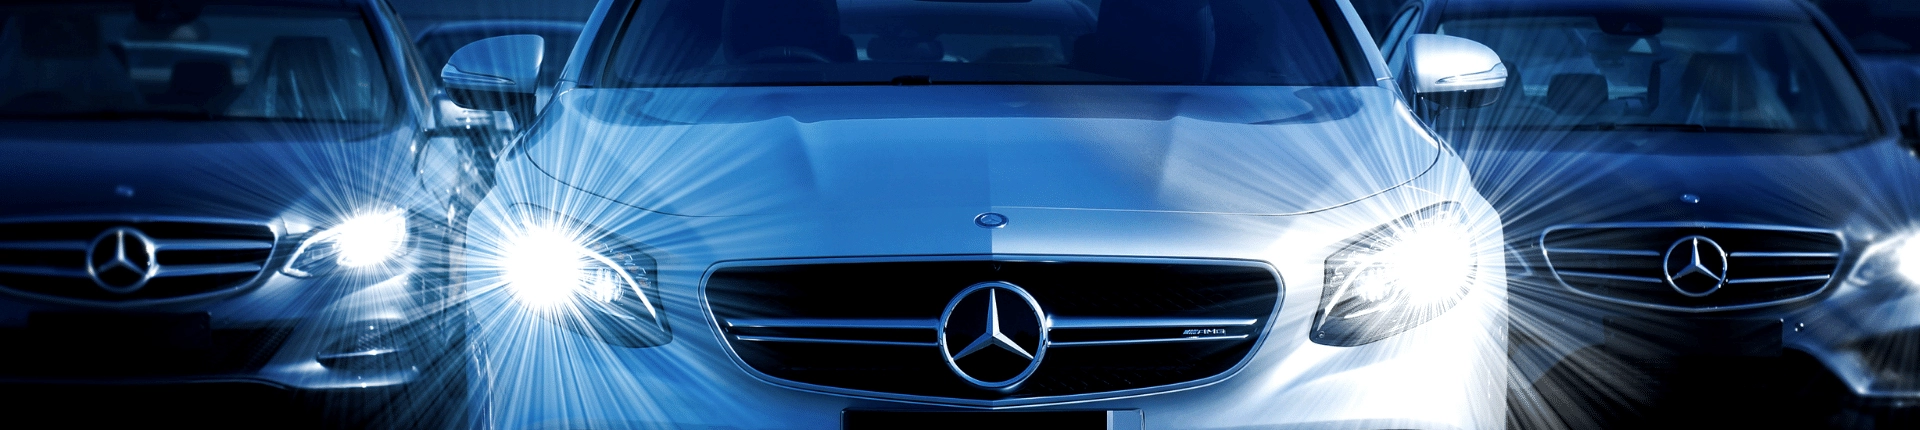 Mercedes-Benz Araçları Hakkında Genel Bilgiler